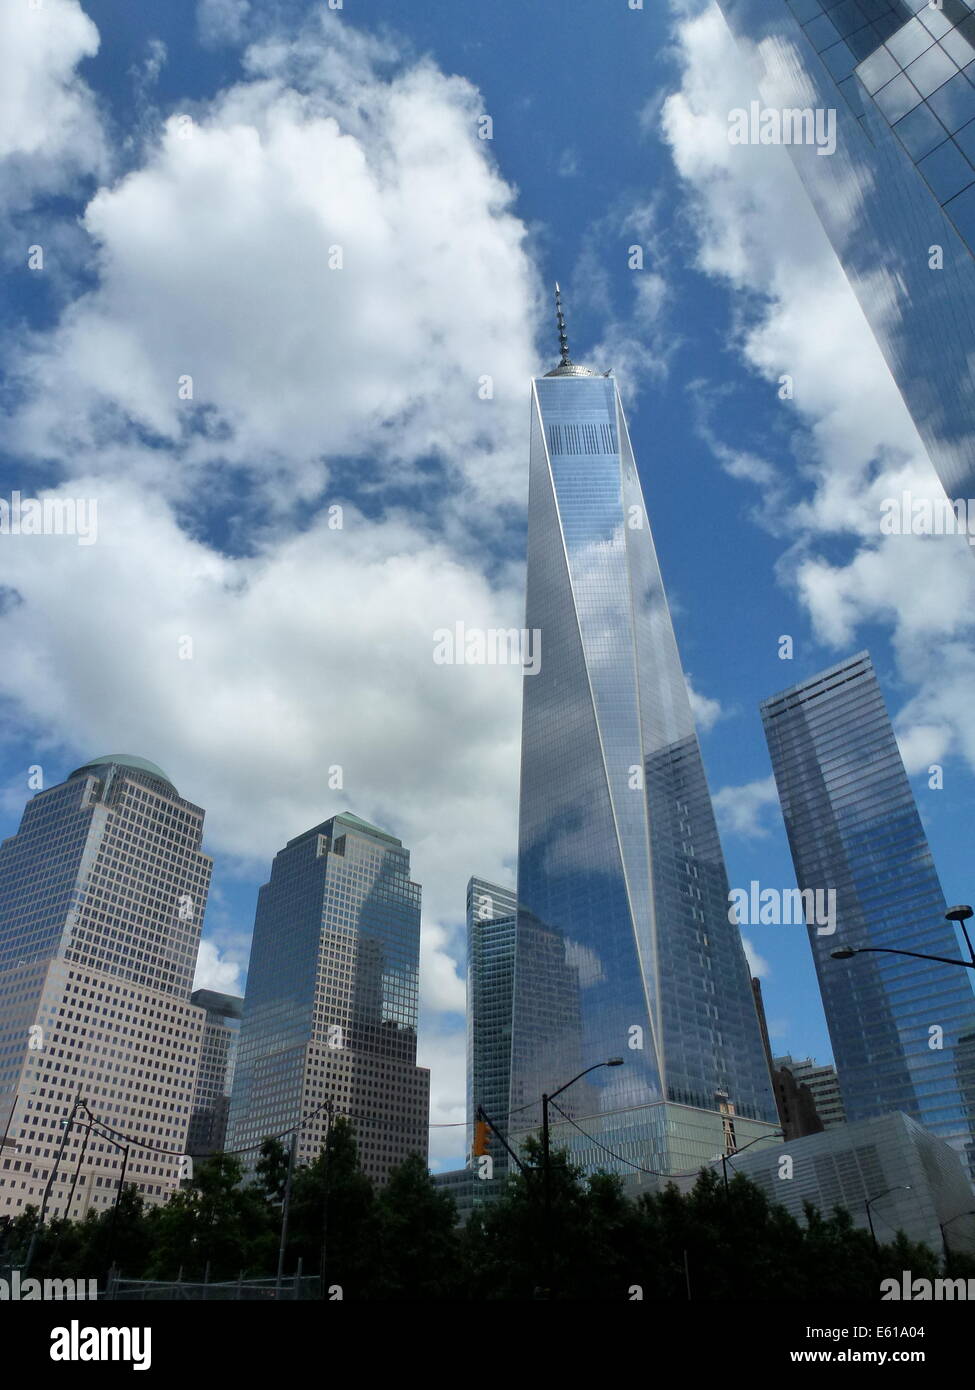 Wolken-Spiegel an der Fassade des One World Trade Center (WTC 1) Büro-Hochhaus, früher bekannt als der Freedom Tower befindet sich angrenzend zu der World Financial Center (WFC) (L) in New York City, USA, 20. August 2014. Auf der Website auch bekannt als Ground Zero, das sah die Zerstörung des World Trade Center in den Terroranschlag am 11. September 2001, wurde das WTC 1 Hochhaus gebaut. Das Gebäude, das seit 2006 im Bau gewesen ist das höchste Hochhaus in den Vereinigten Staaten, 541,3 Meter. Foto: Alexandra Schuler/Dpa - Nr. Drähte SERVICE- Stockfoto